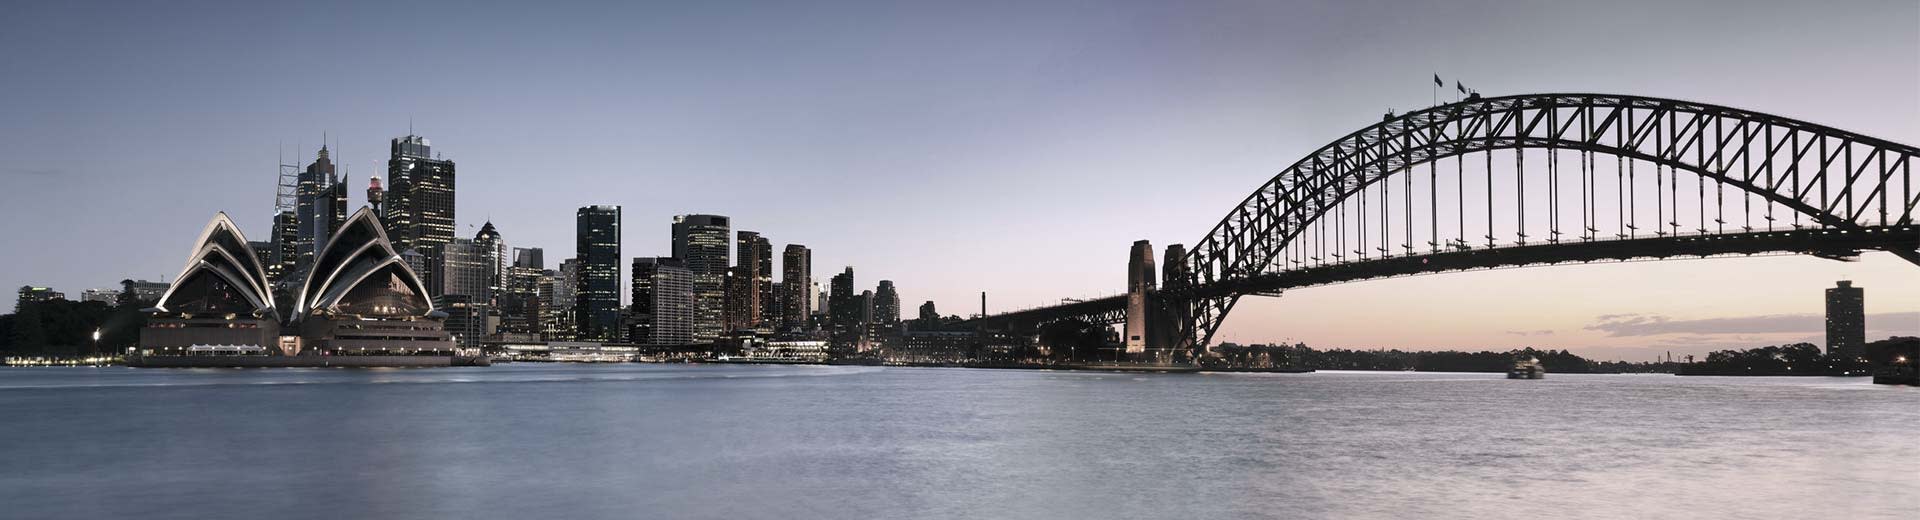 Le célèbre opéra de Sydney domine cette scène, avec plusieurs bâtiments et le pont de Sydney à droite.